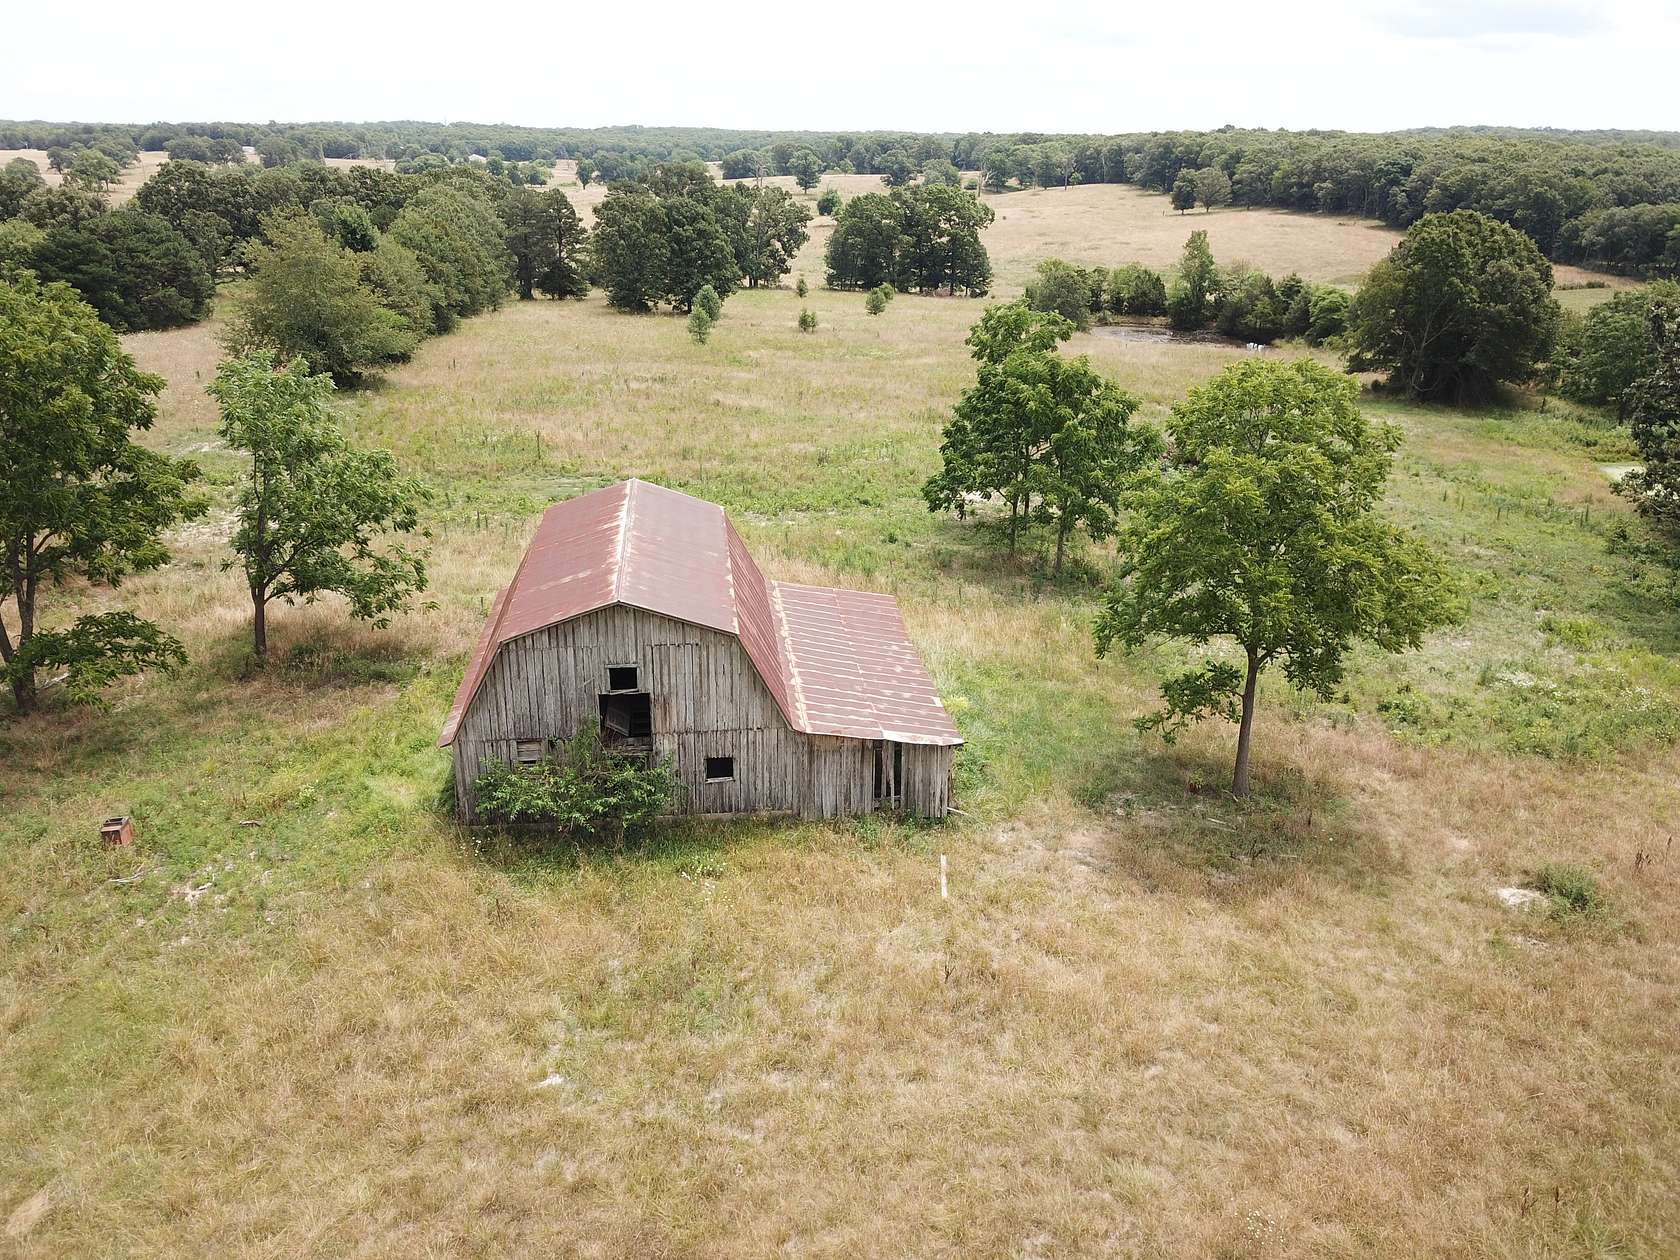 20 Acres of Agricultural Land for Sale in Salem, Missouri